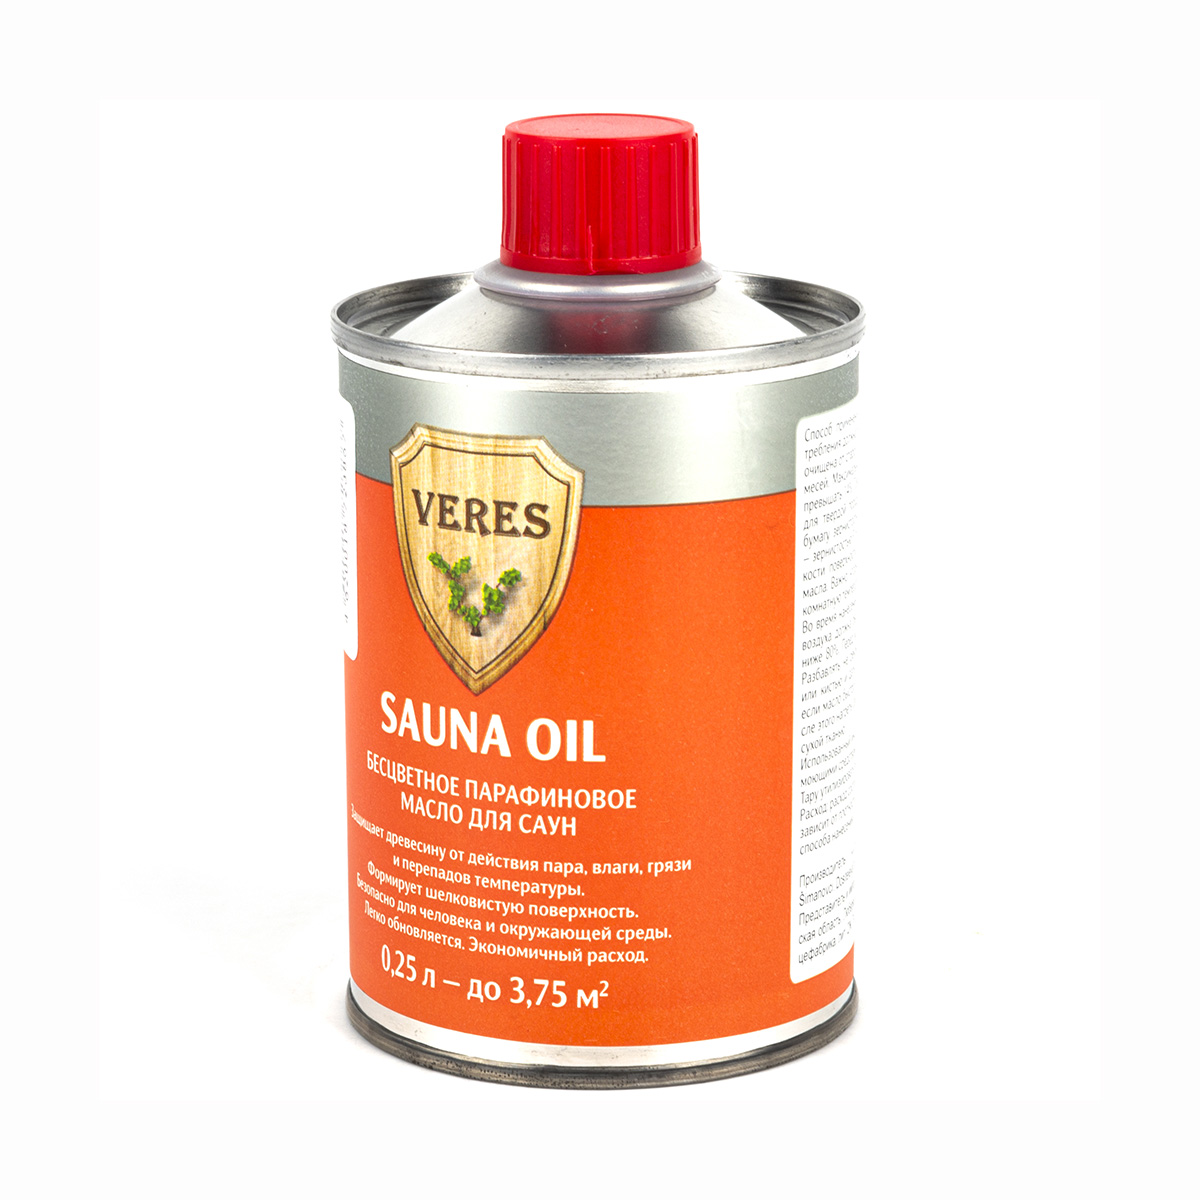 Верес масло для саун  "sauna oil"  0,25 л (1/6) "veres"